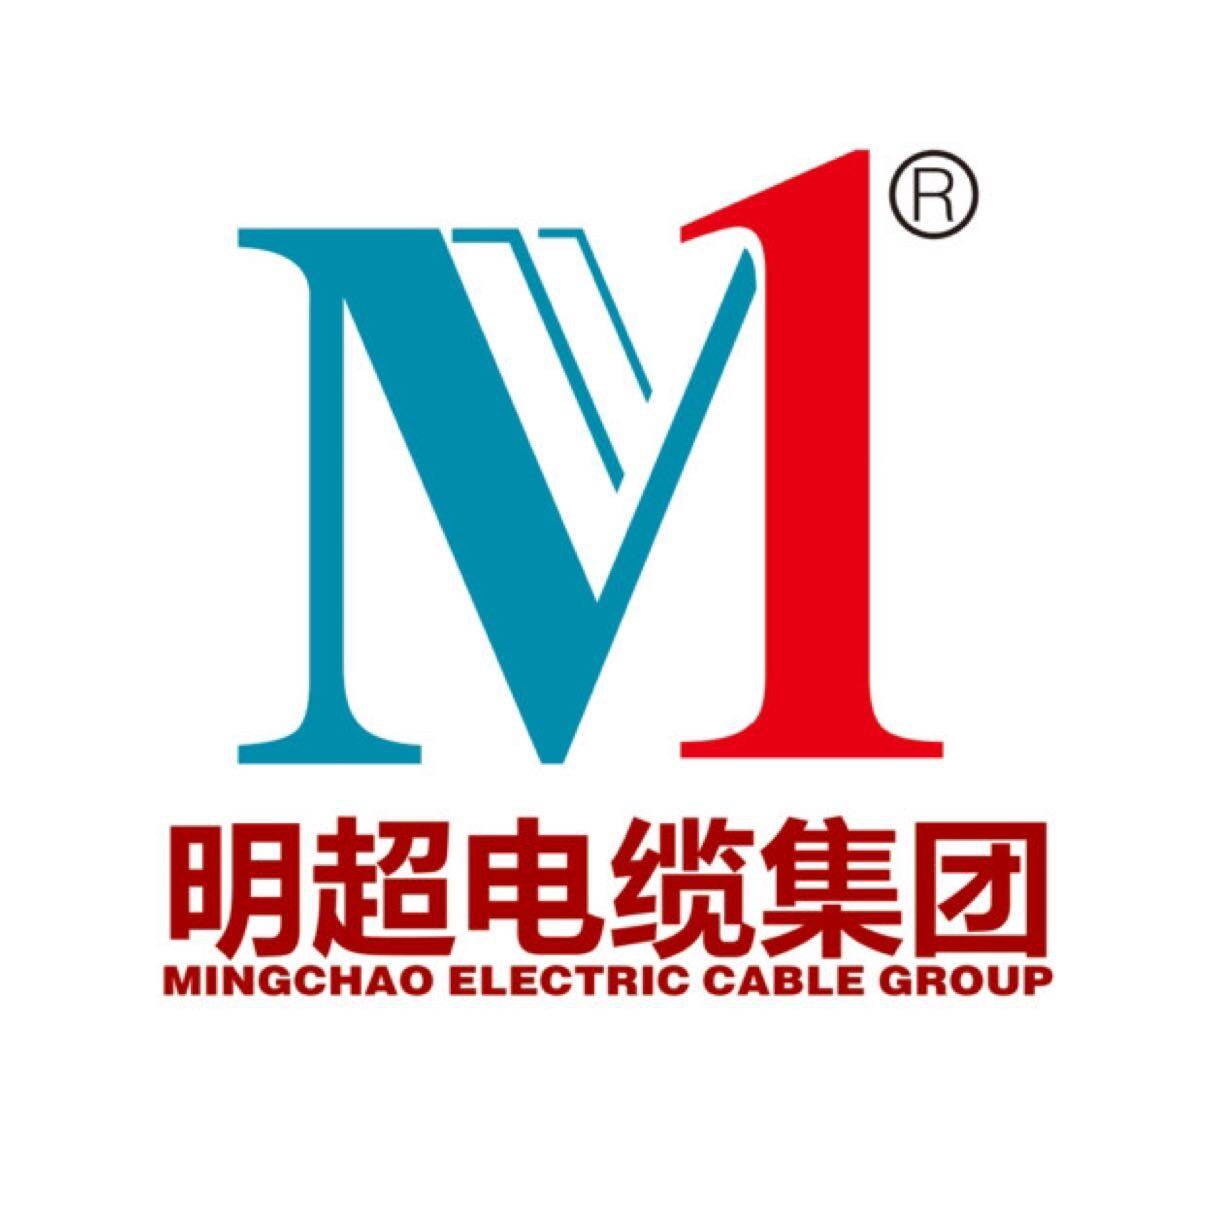 明超电缆招聘logo